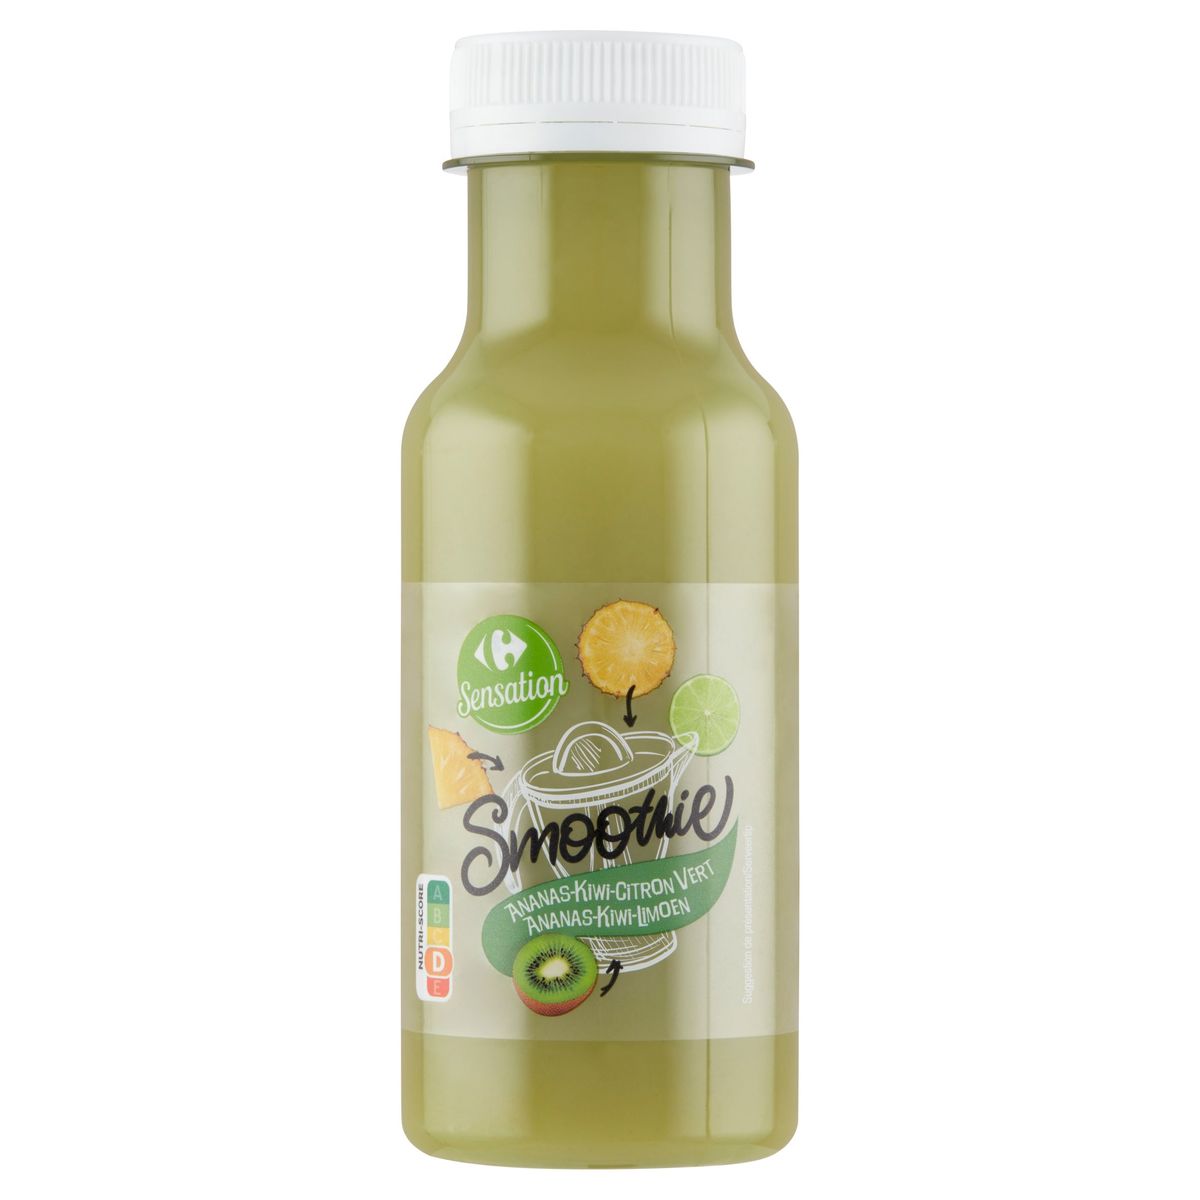 Carrefour Sensation Smoothie Ananas-Kiwi-Citron Vert 250 ml